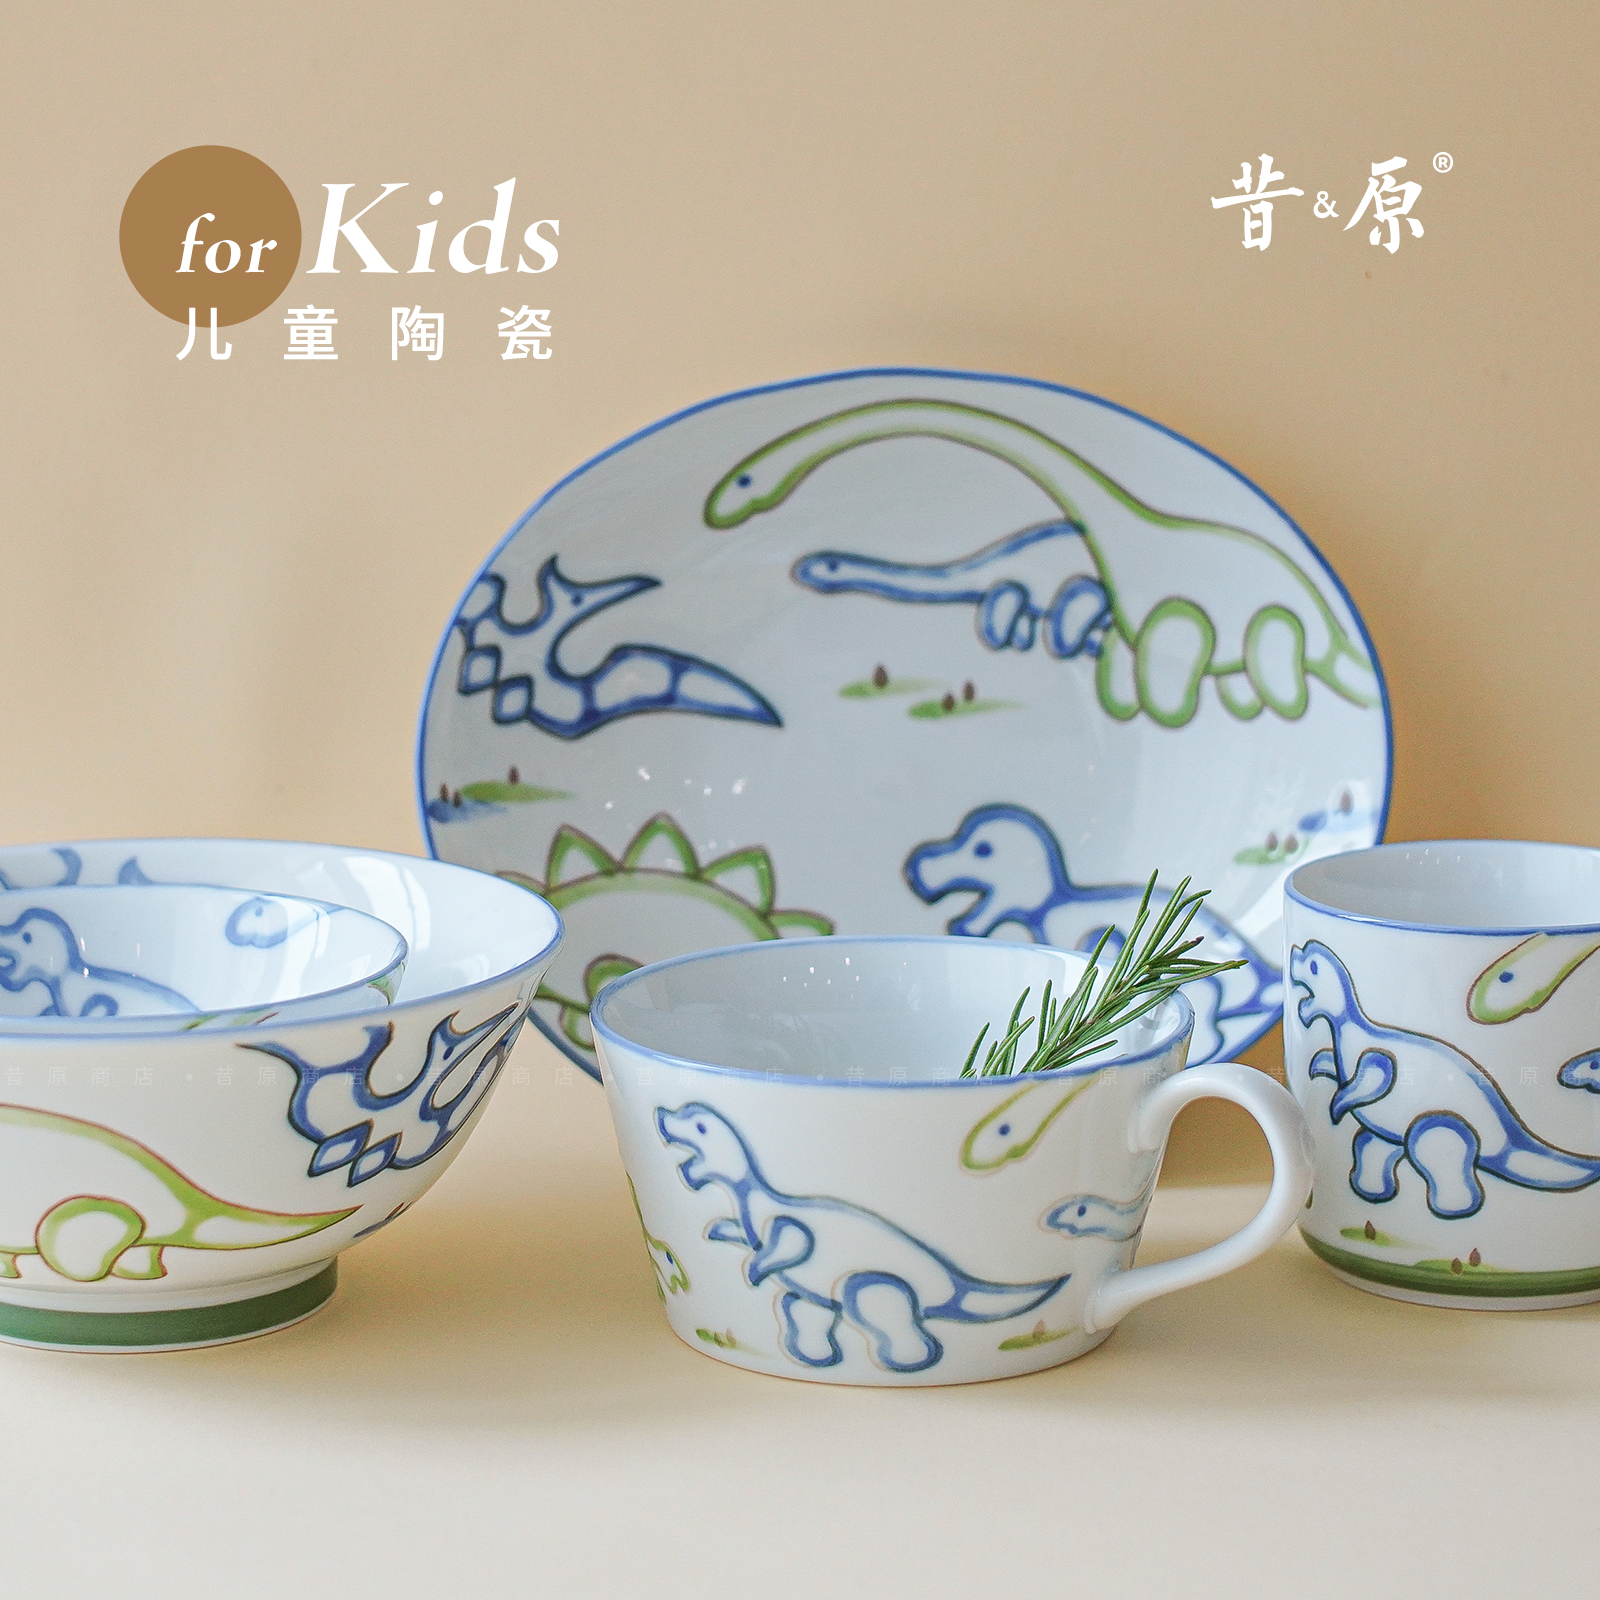 昔原 萌趣恐龙 儿童陶瓷餐具 日本进口釉下彩卡通碗盘 安全耐高温